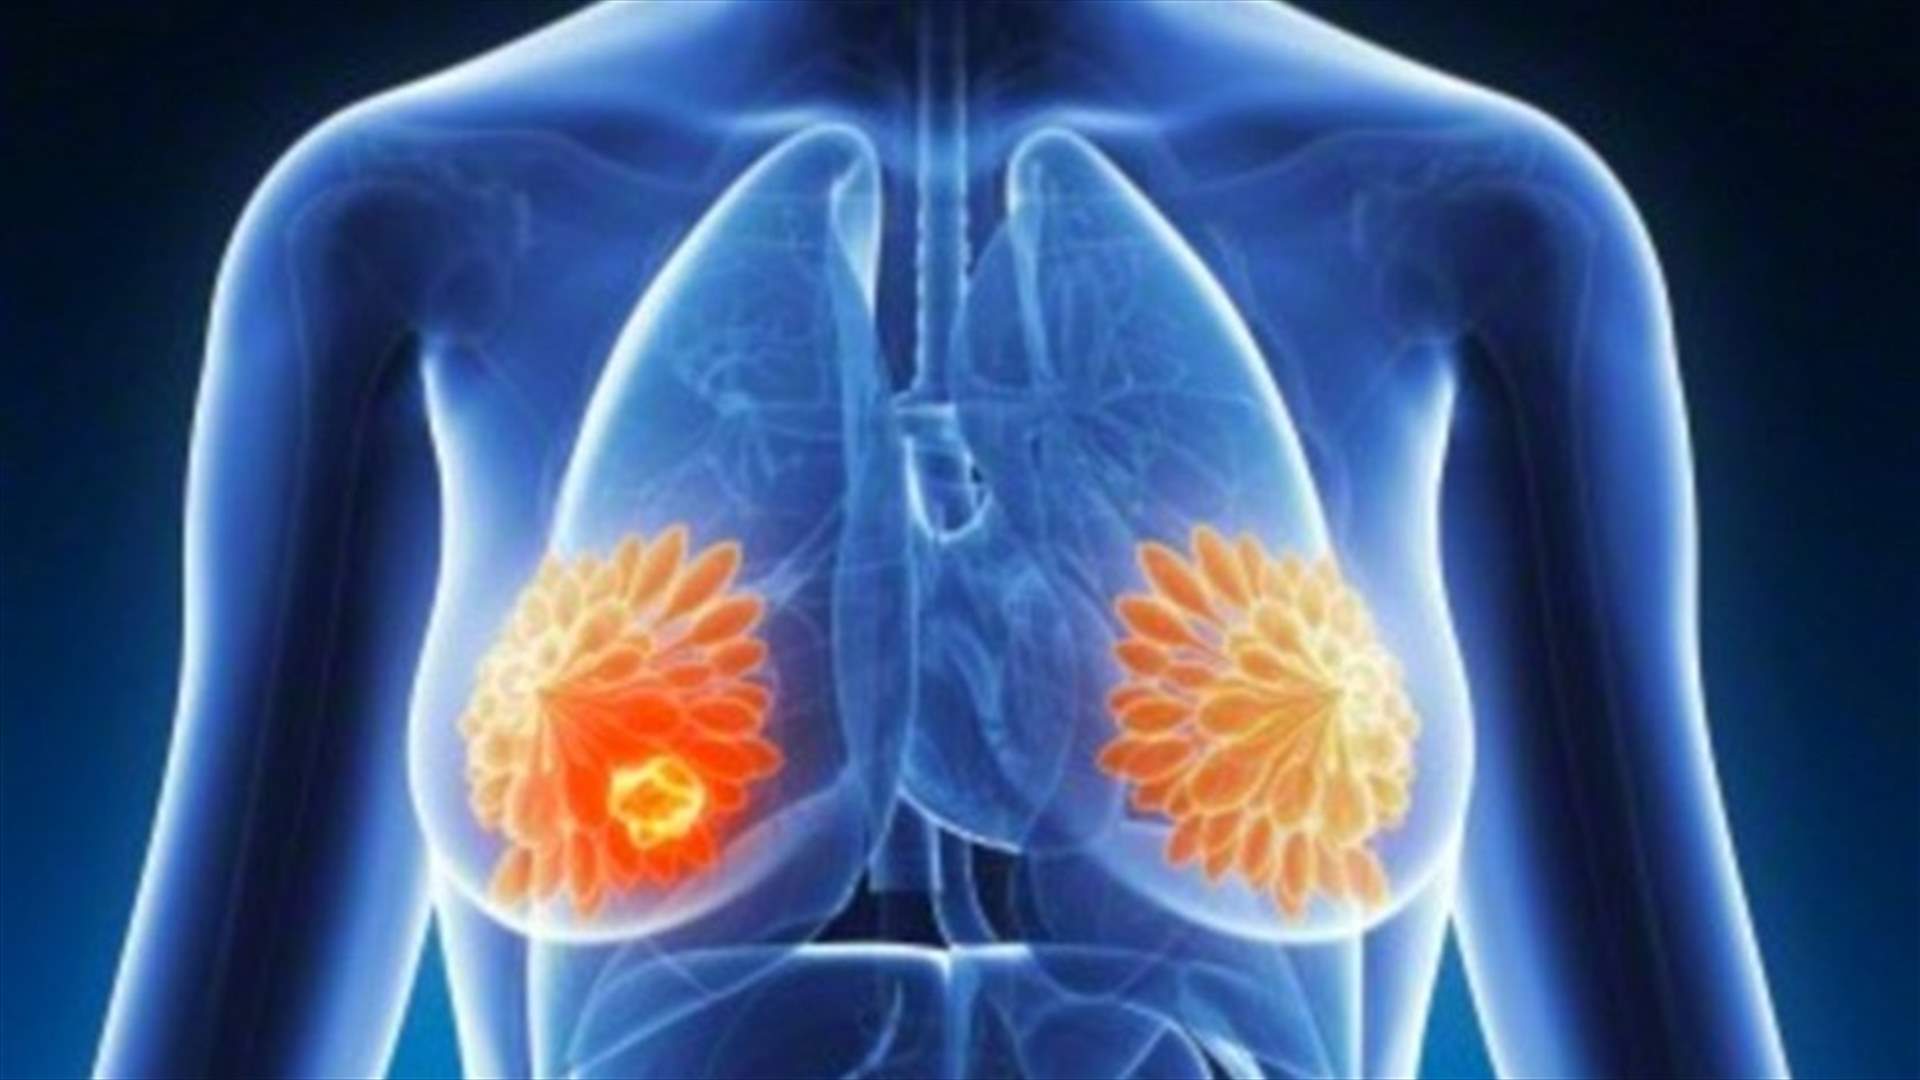 وسيلة لمنع انتشار سرطان الثدي إلى باقي الجسم